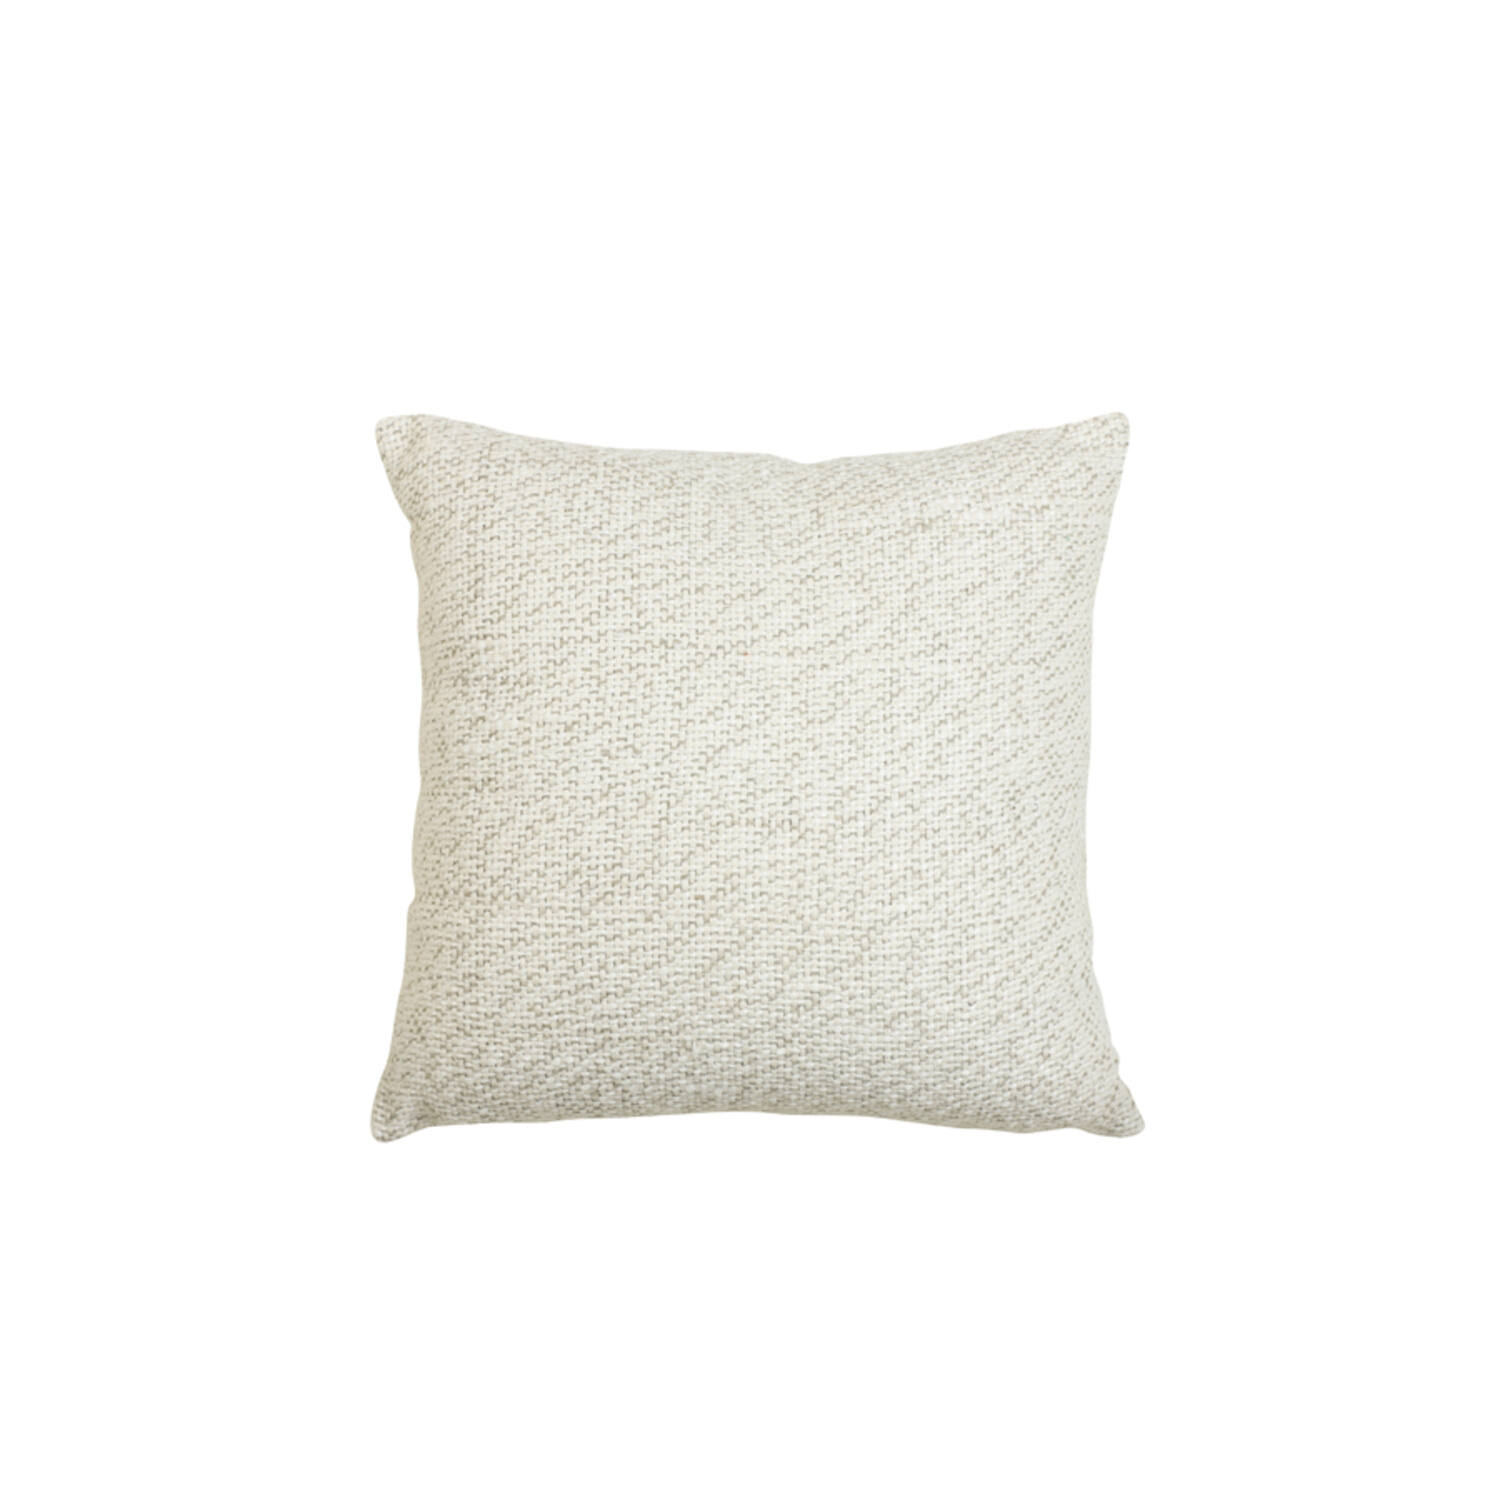 Cushion 45x45 cm MANU white-brown - Light & Living